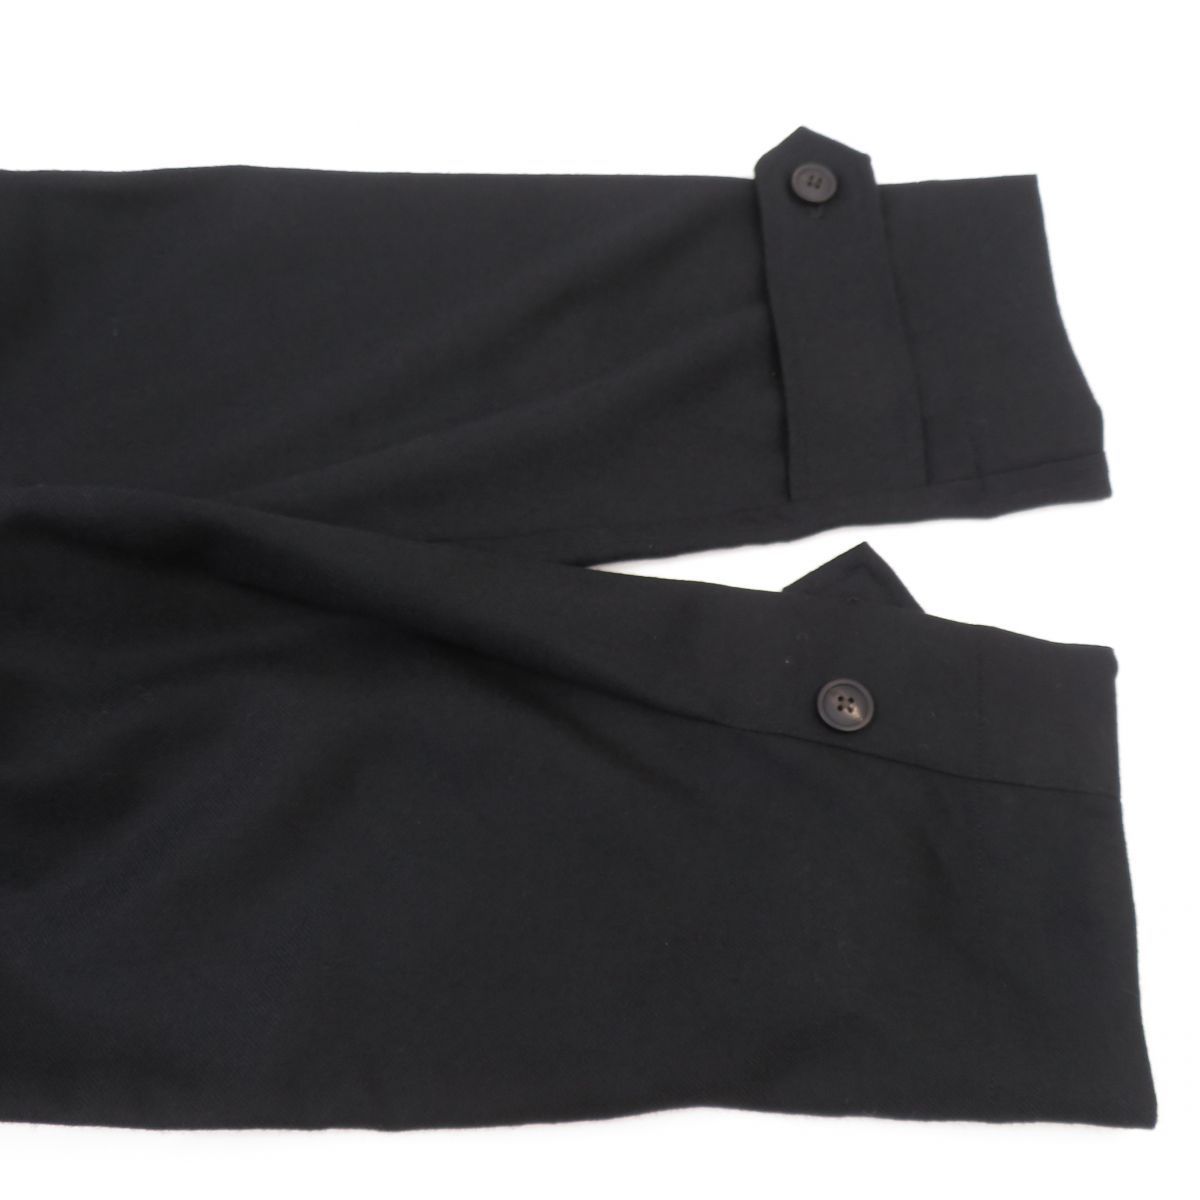 130 markama-kaSHIRT COAT WOOL SOFT SERGE рубашка пальто шерсть soft волна M21C-06SH01C 2/ черный * б/у 